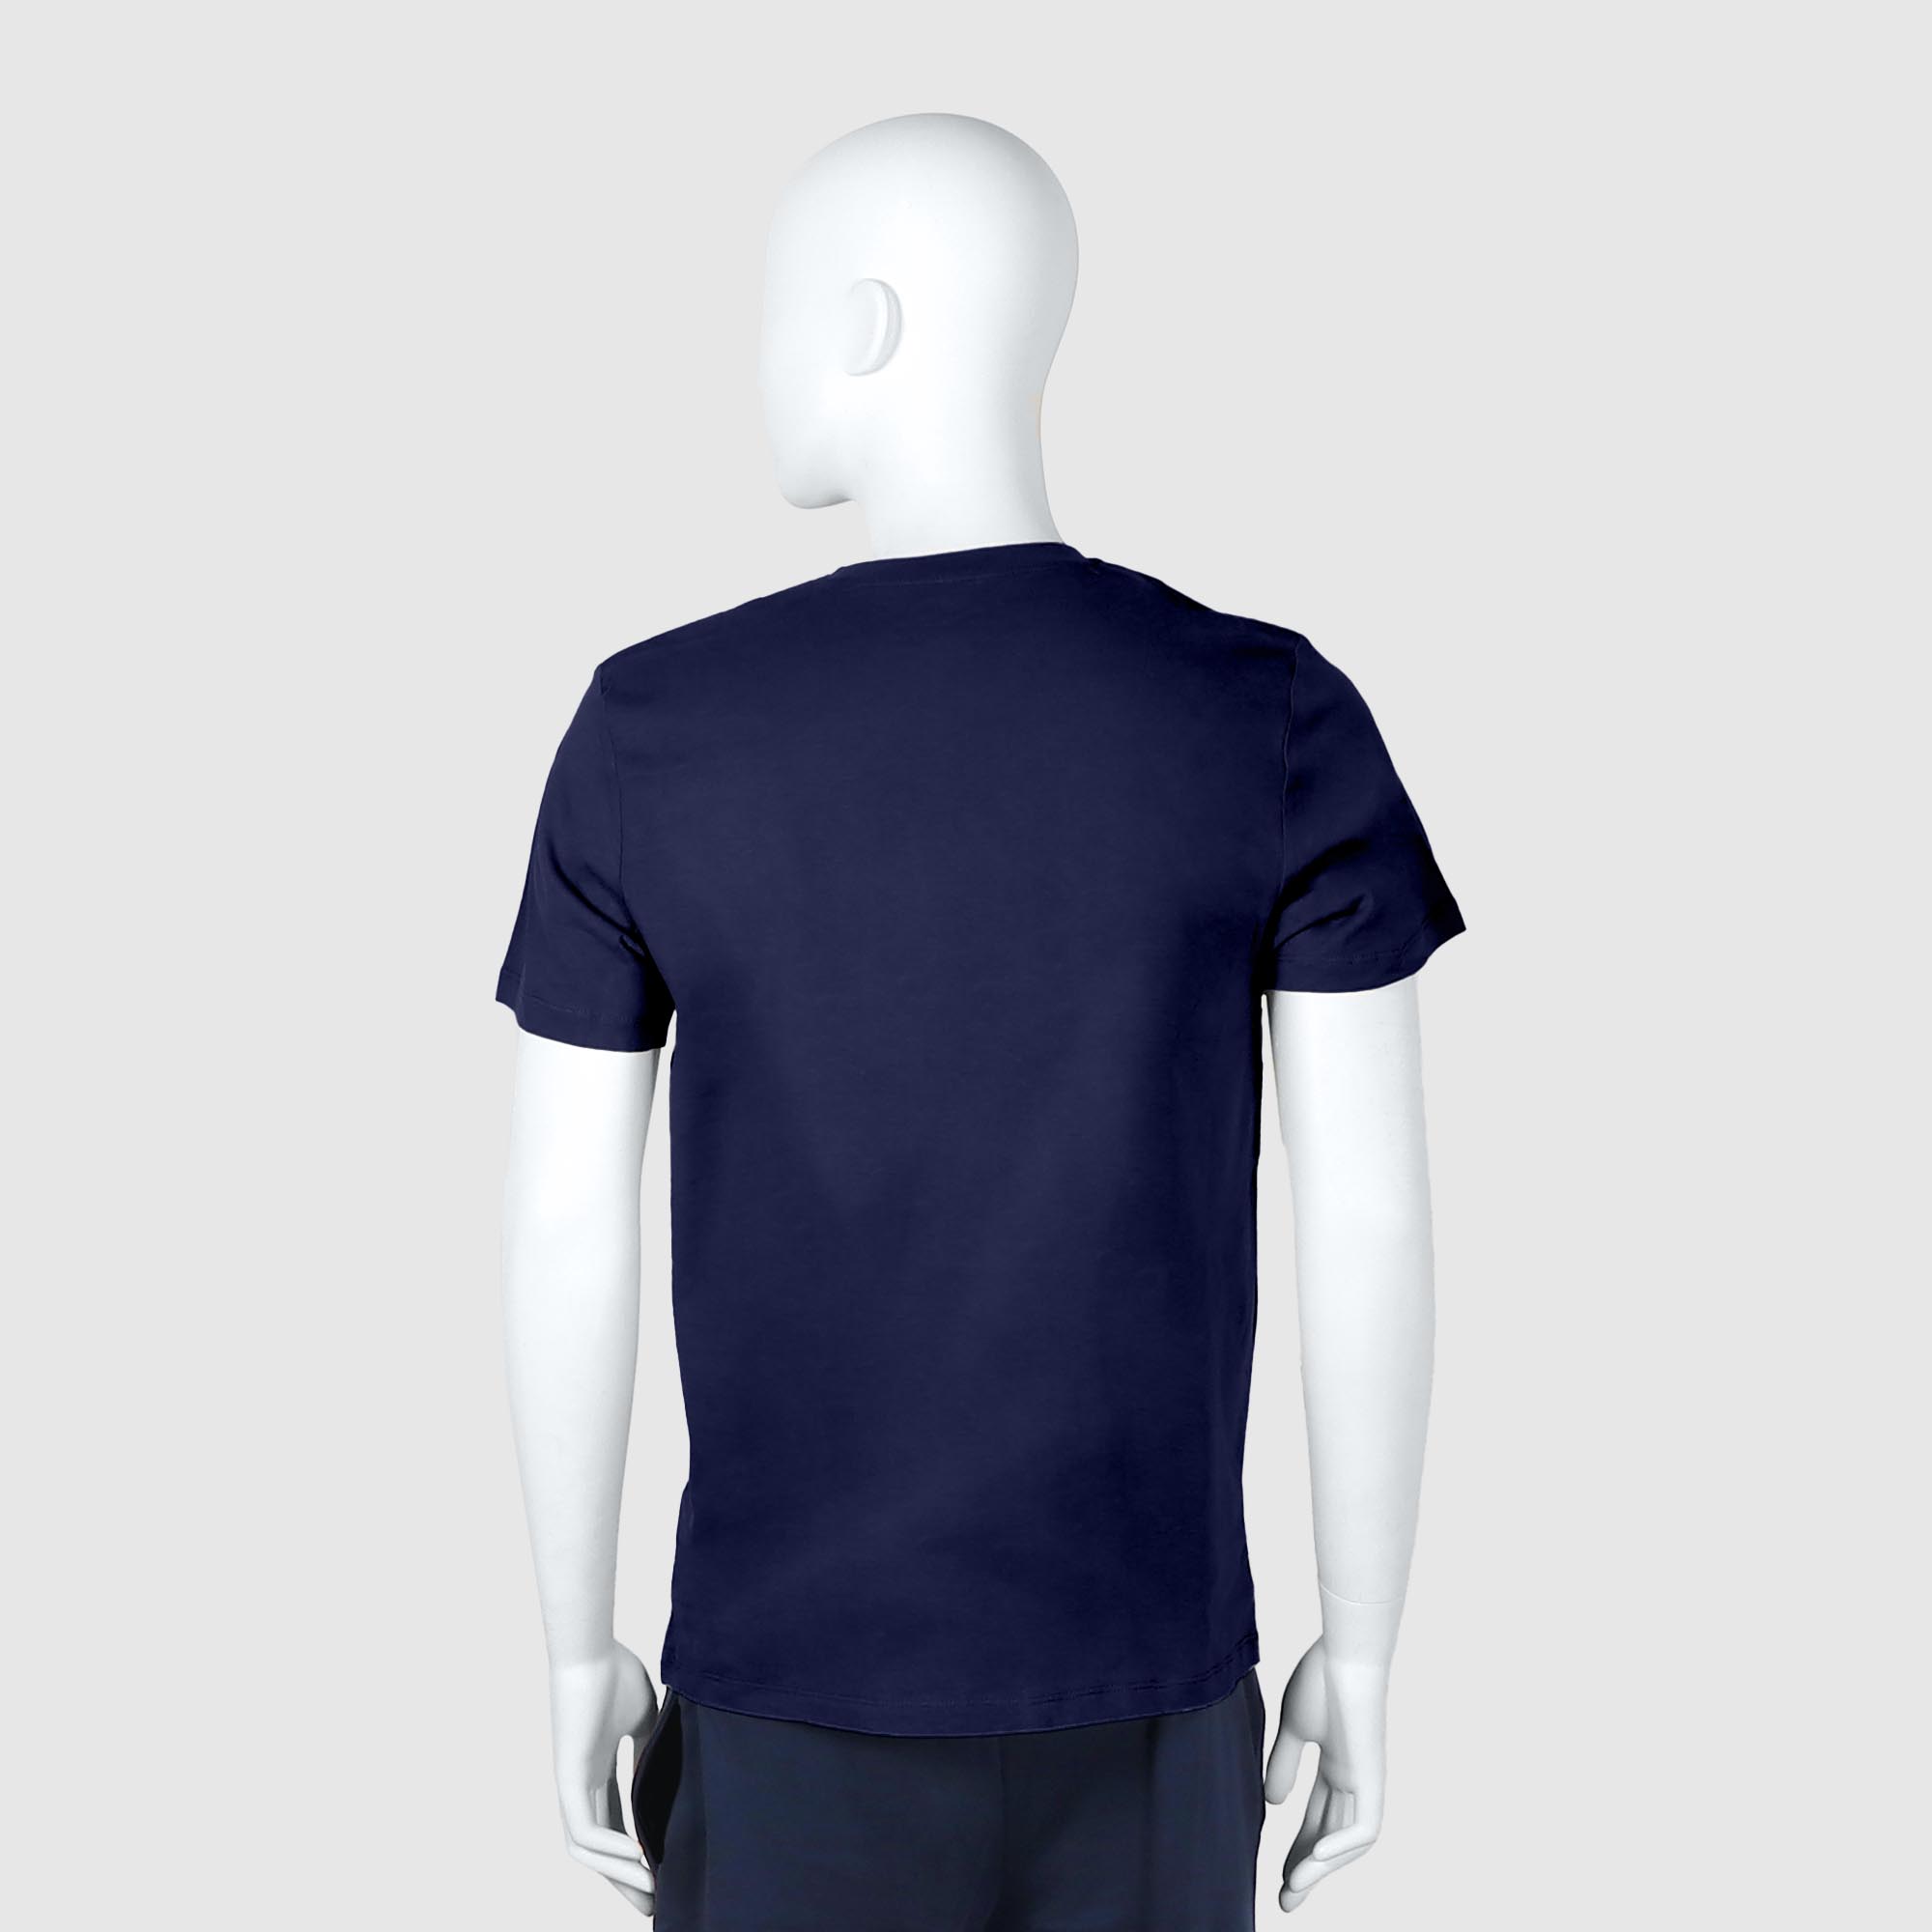 Мужская футболка Diva Teks синяя (DTD-05), цвет синий, размер 52-54 - фото 2